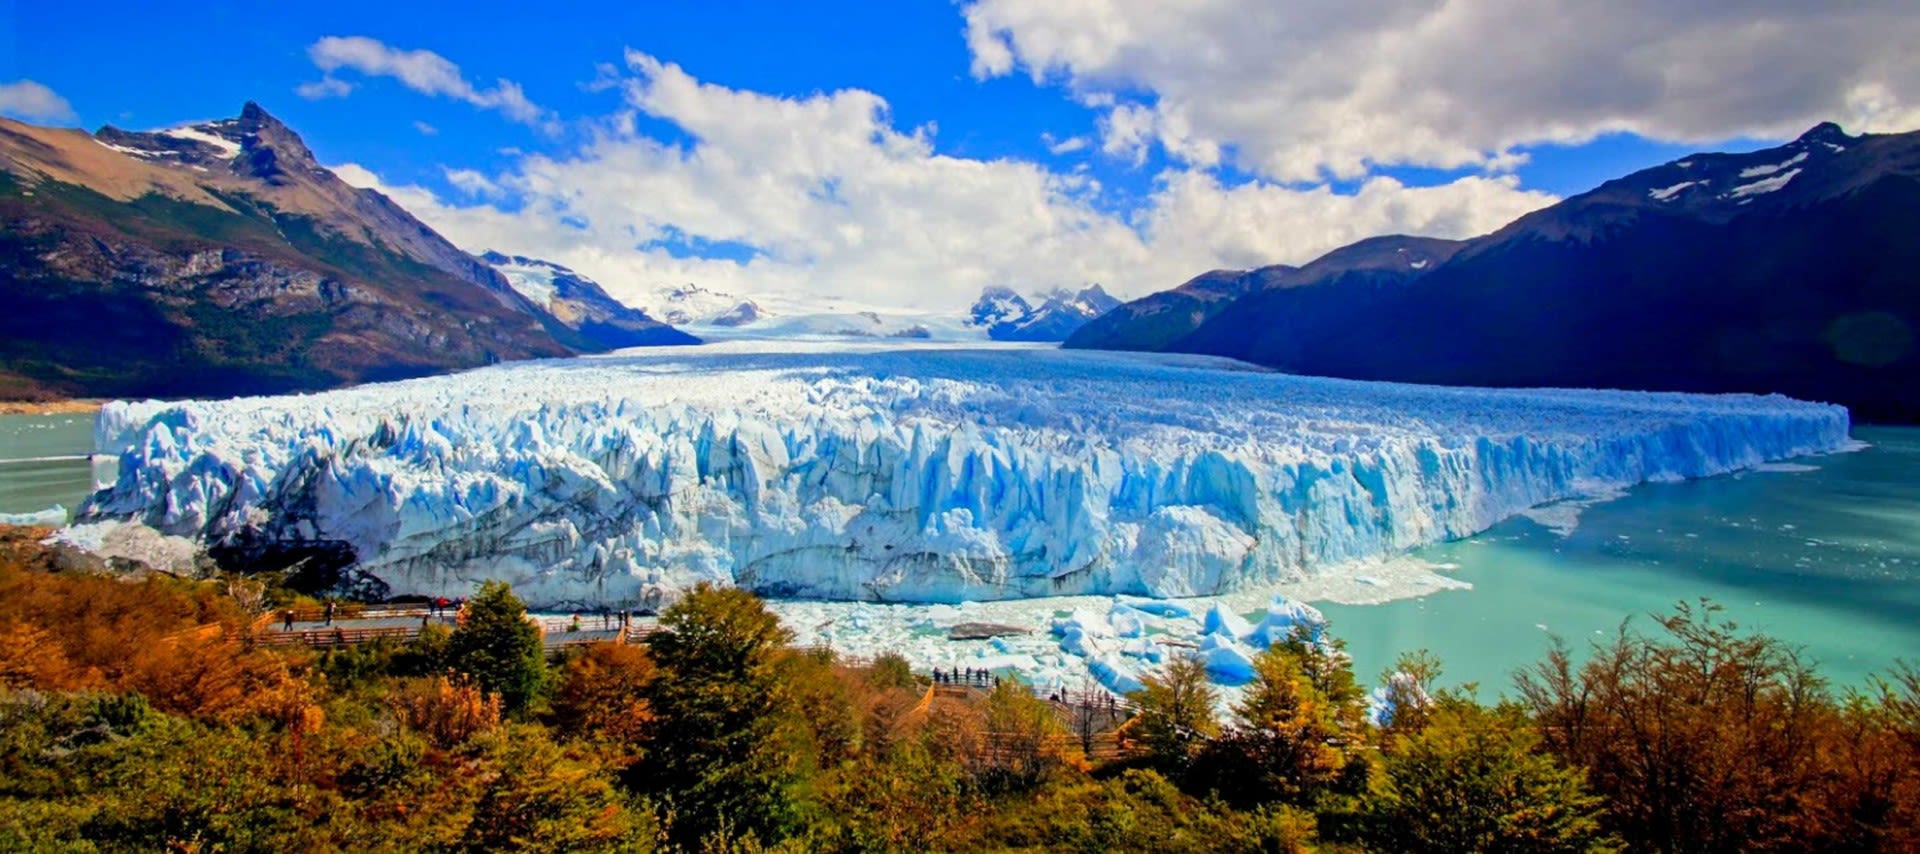 Perito Moreno Glacier in Argentine Patagonia, Los Glaciares National Park